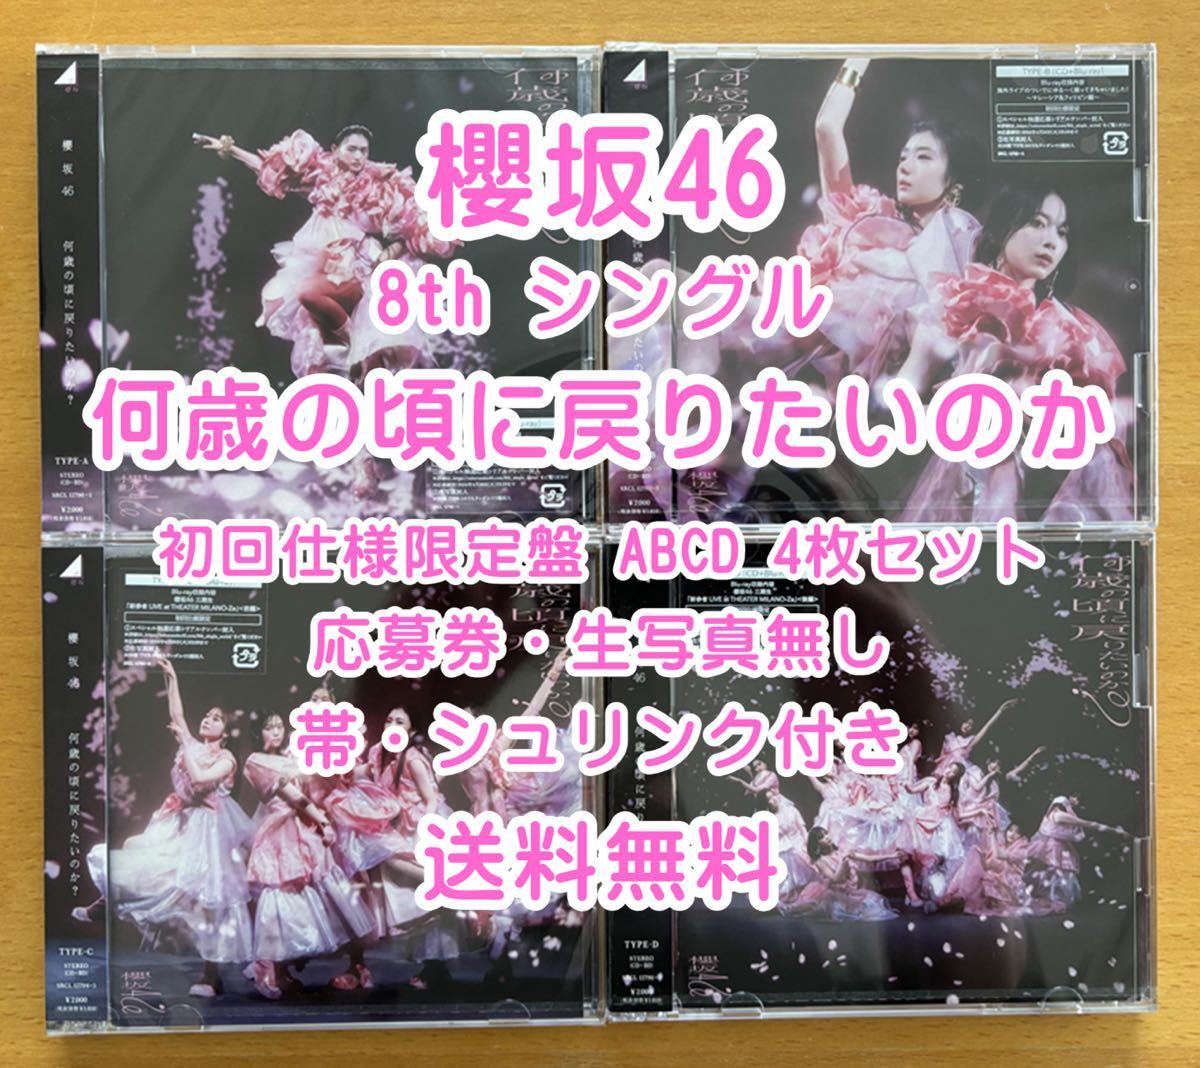 ◆ 櫻坂46 8th 何歳の頃に戻りたいのか 初回限定仕様 CD+Blu-ray ABCD 4枚セット 未再生 特典関係無し ◆ お早めに_画像1